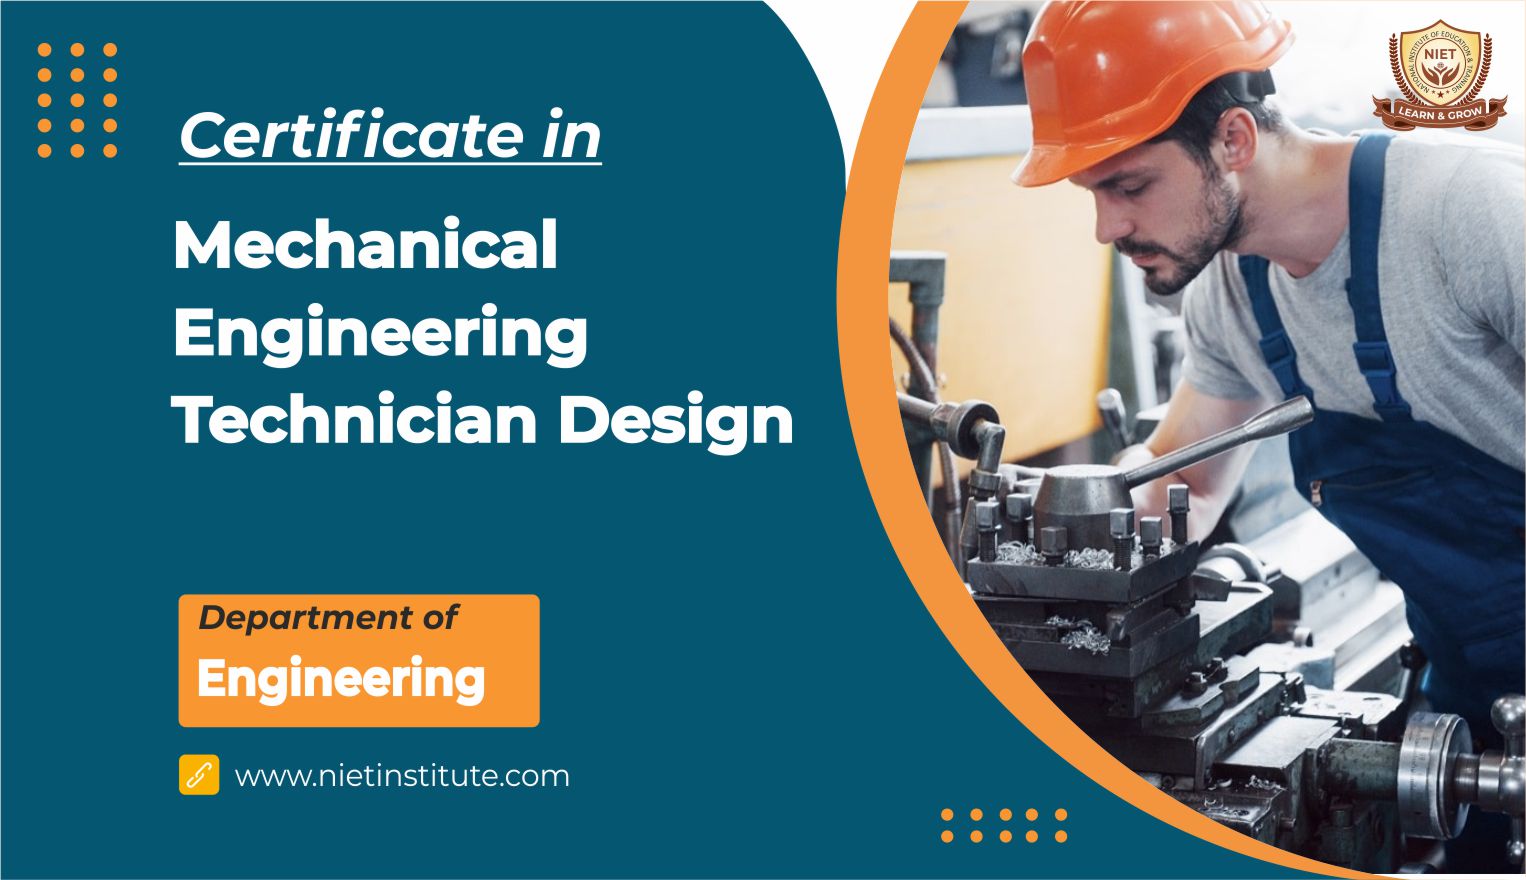 Certificate in Mechanical Engineering Technician Design